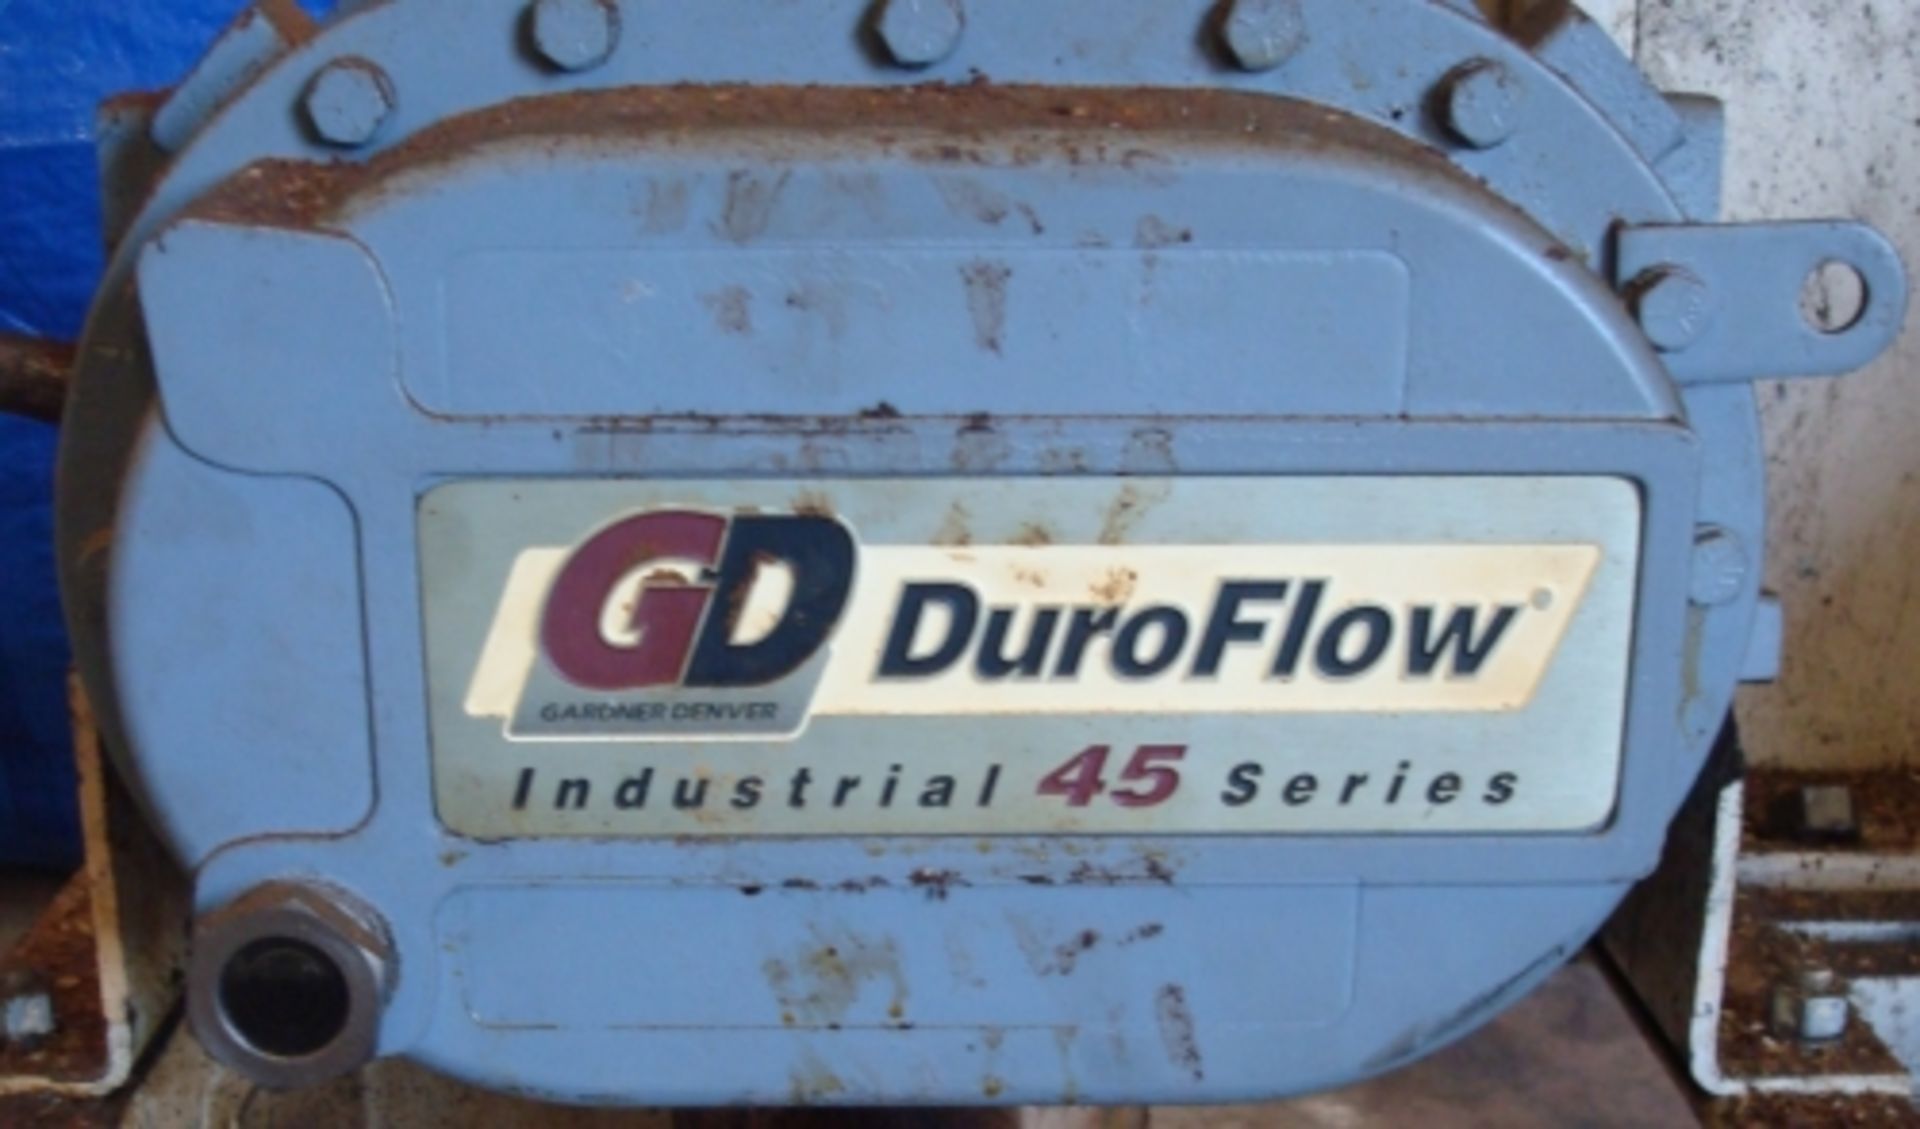 DuraFlow mild steel positive displacement blower - Image 3 of 4